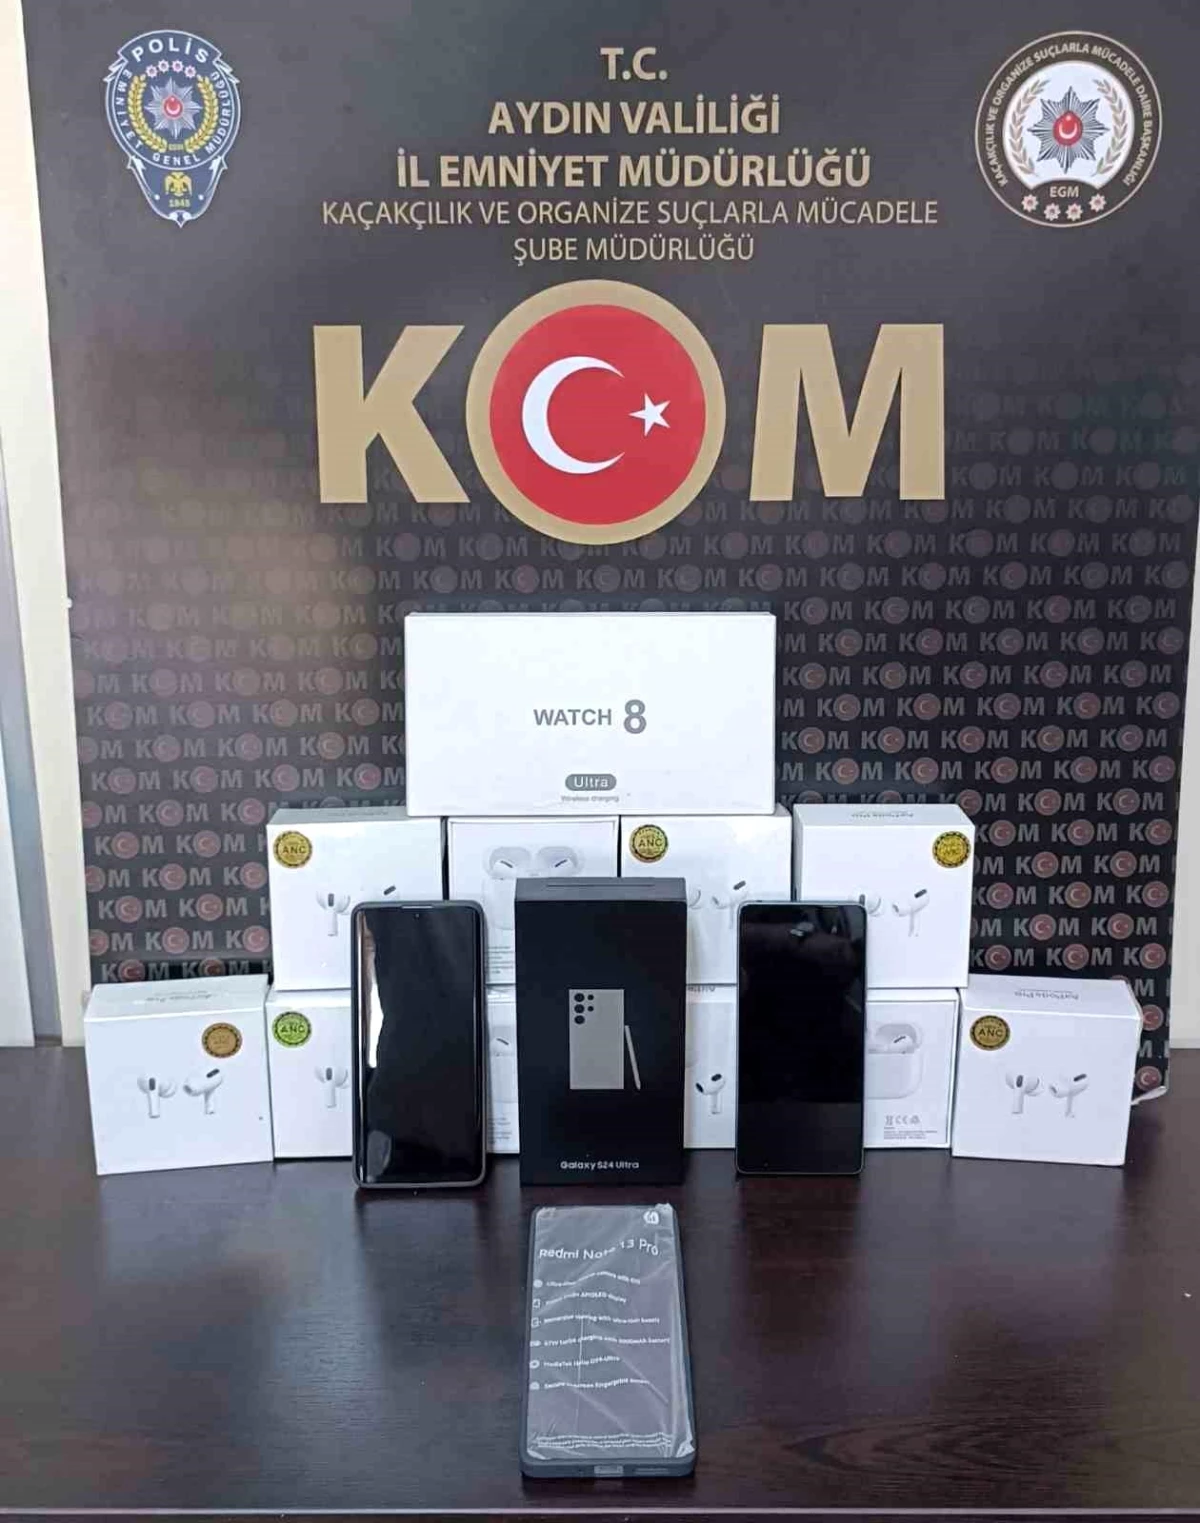 Aydın’da Kaçakçılık Operasyonu: 200 Bin TL Değerinde Cep Telefonu ve Akıllı Saat Ele Geçirildi